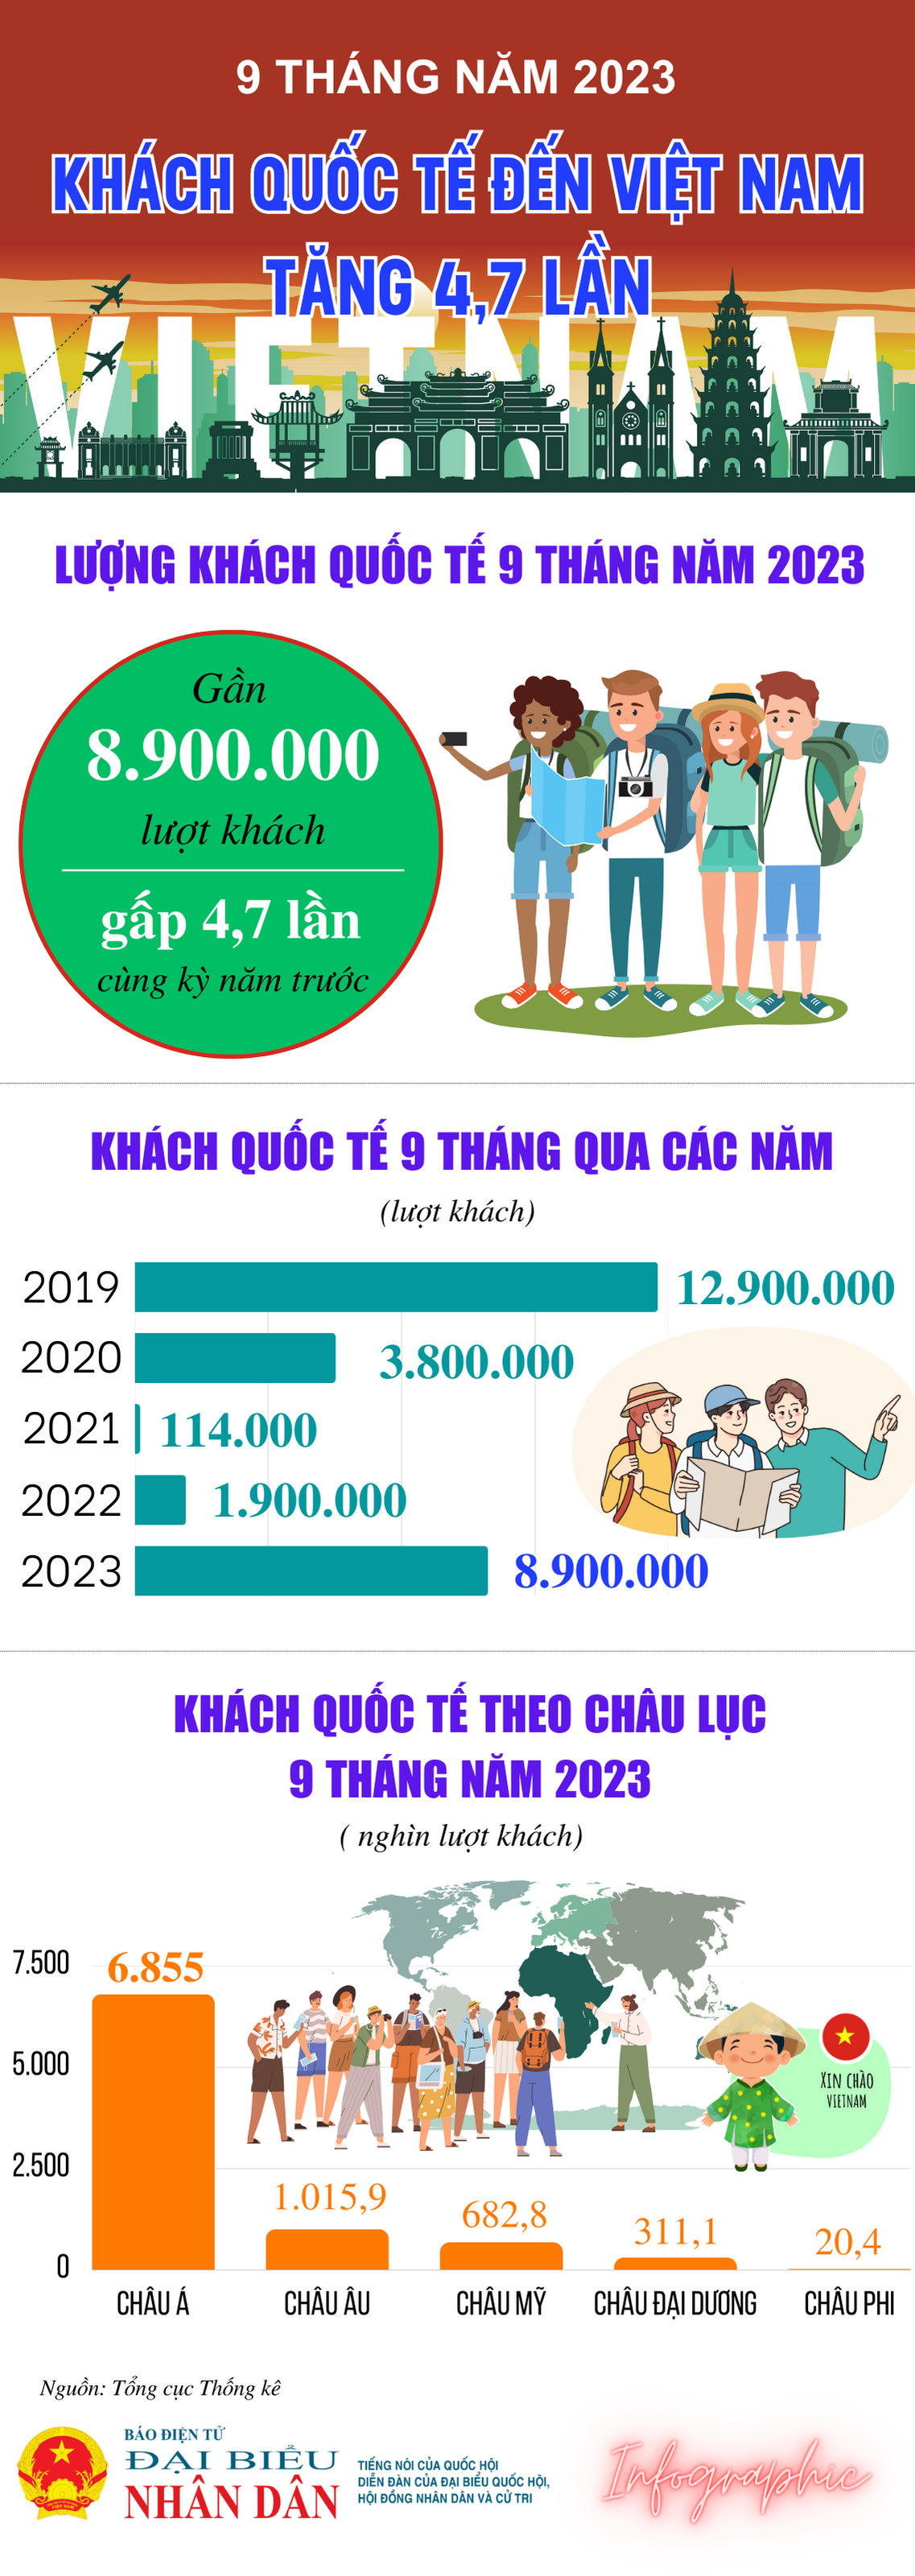 Khách quốc tế đến Việt Nam tăng 4,7 lần so với cùng kỳ - Ảnh 1